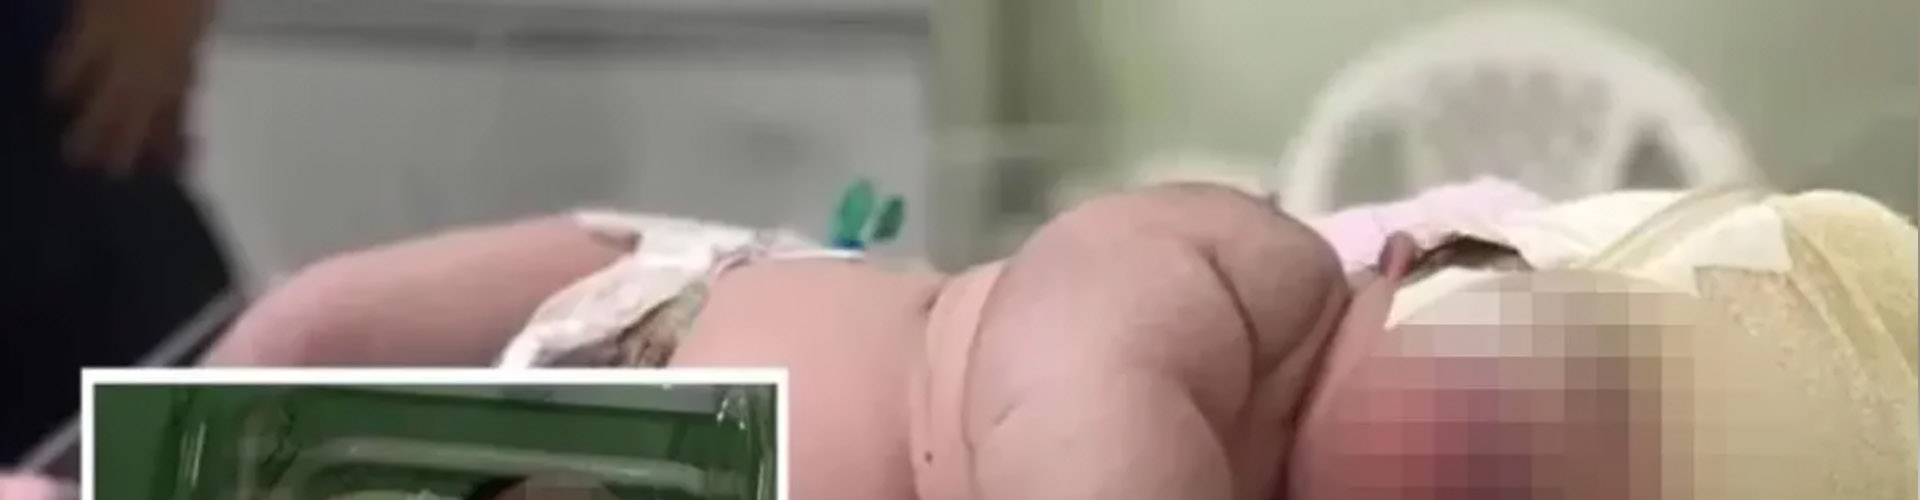 Nace bebé “gigante” en Brasil: Pesa 7.3 kilos y necesita pañales de nueve meses